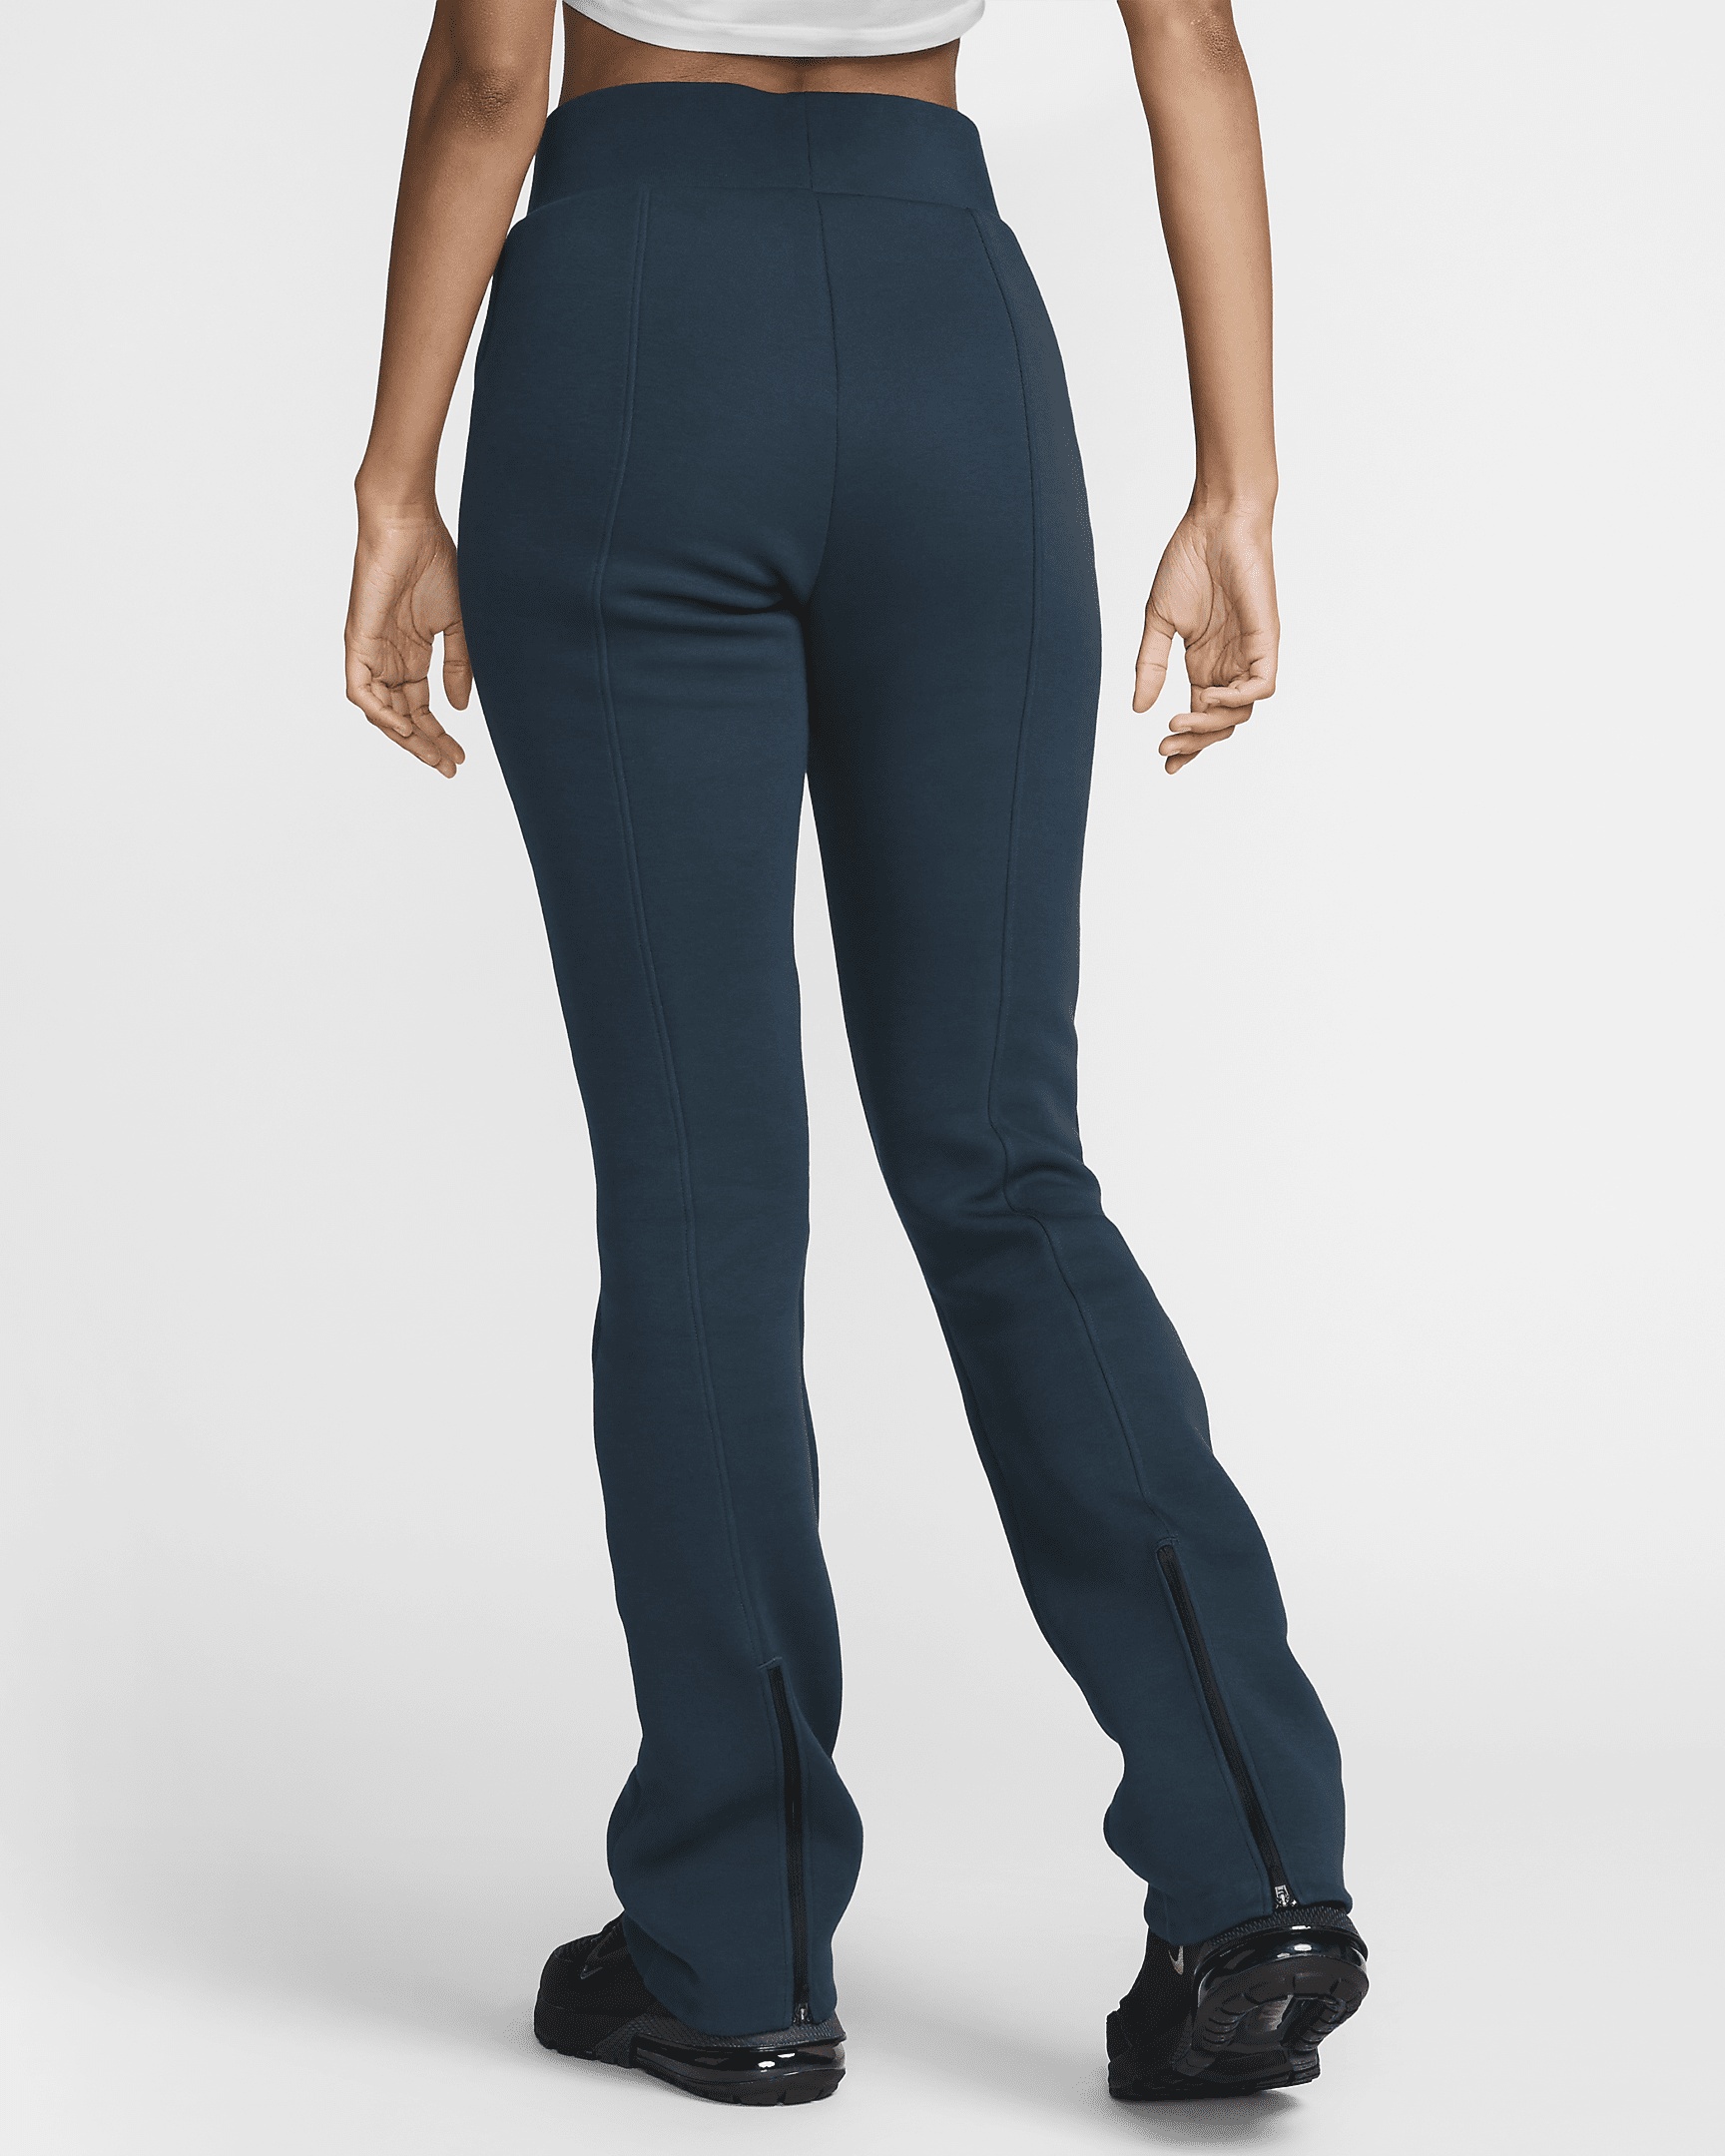 Nike Sportswear Tech Fleece Women's High-Waisted Slim Pants - 2